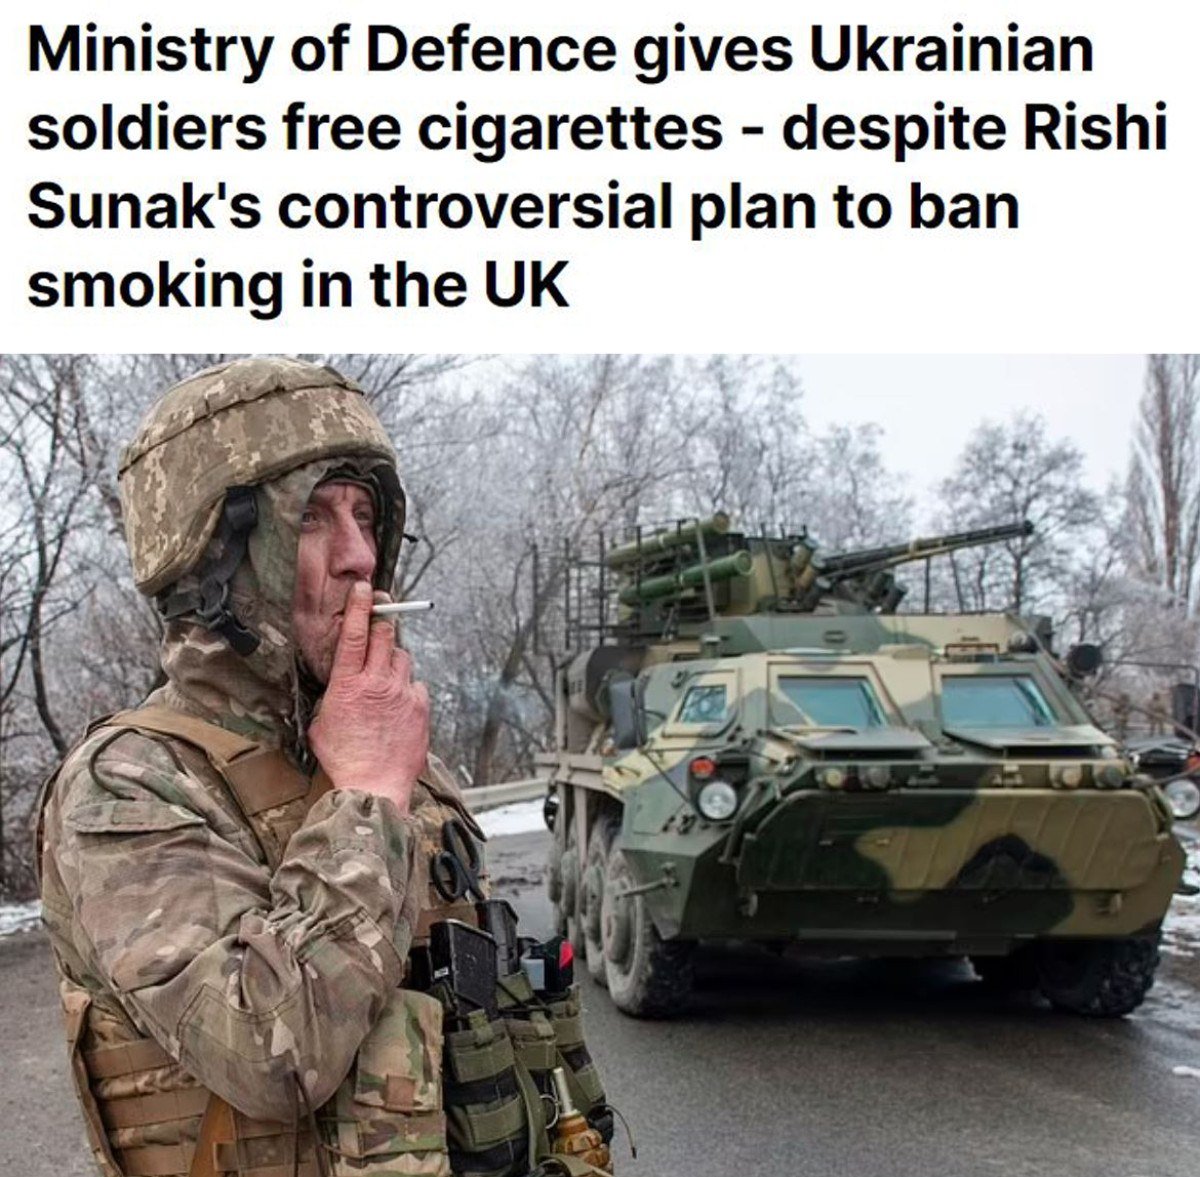 1713810089 238 Sigara Ukraynali askerlere bedava Ingilizlere ise yasak